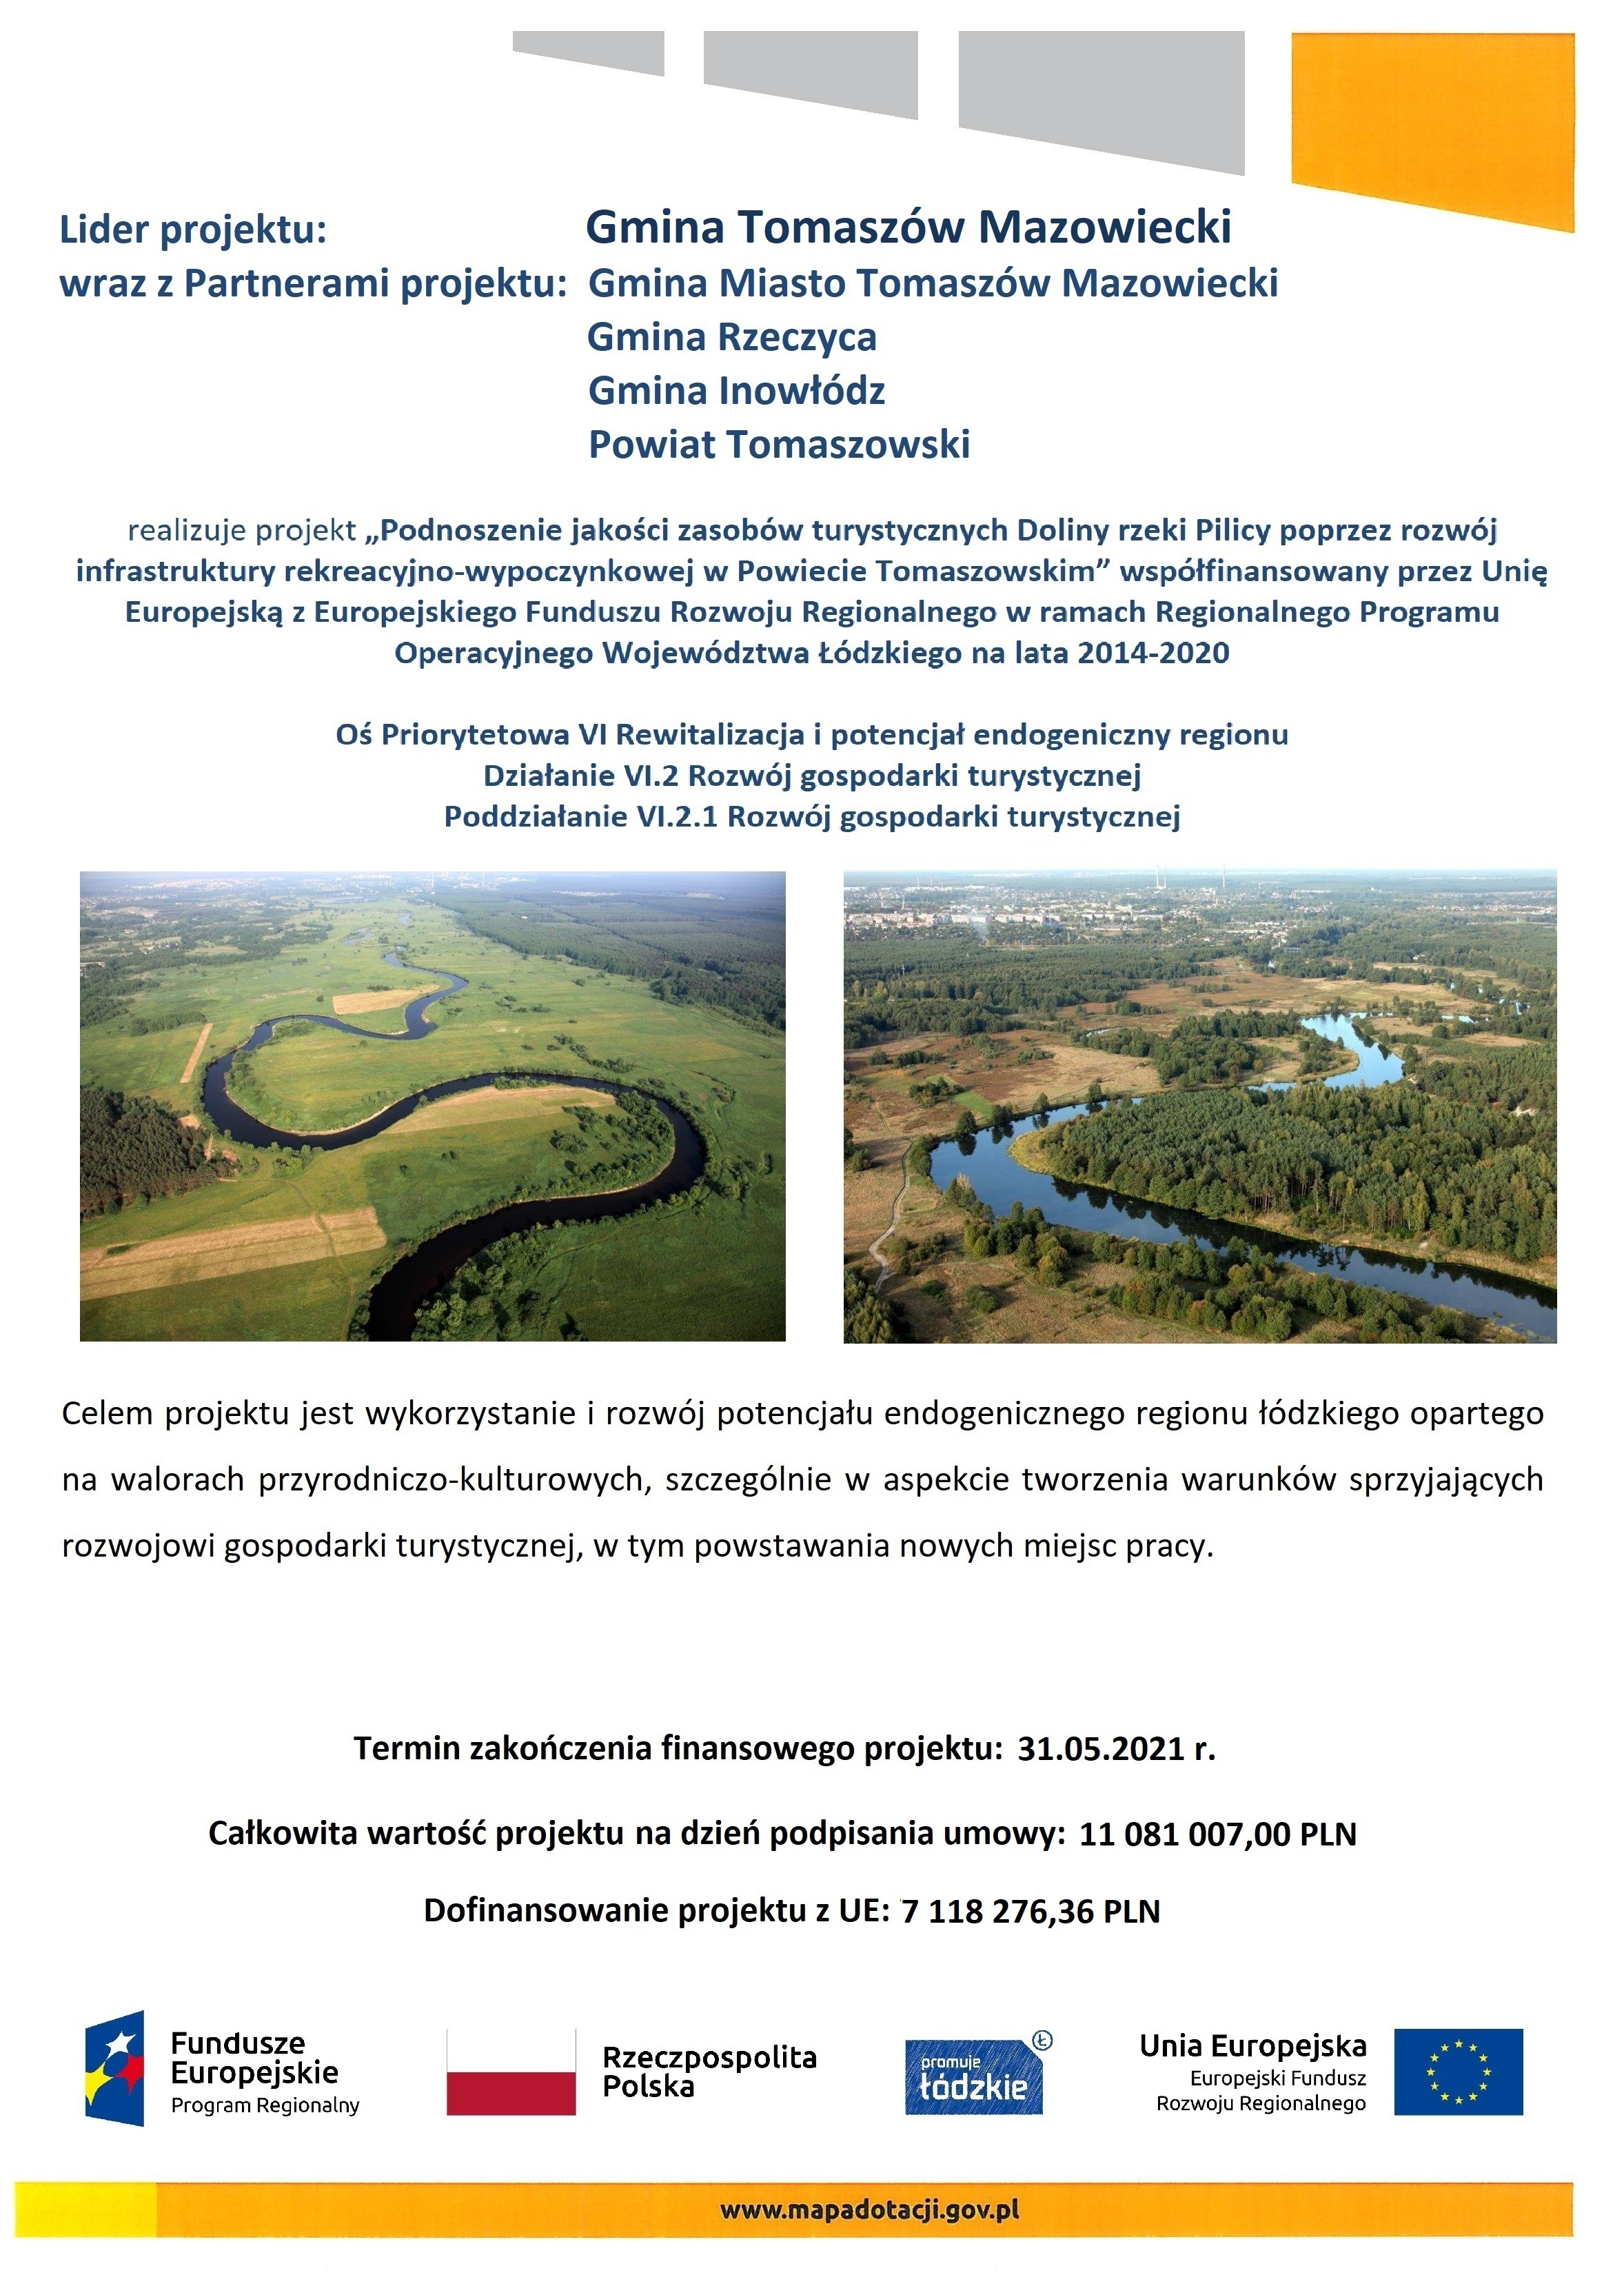 Podnoszenie jakości zasobów turystycznych Doliny rzeki Pilicy poprzez rozwój infrastruktury rekreacyjno-wypoczynkowej w Powiecie Tomaszowskim